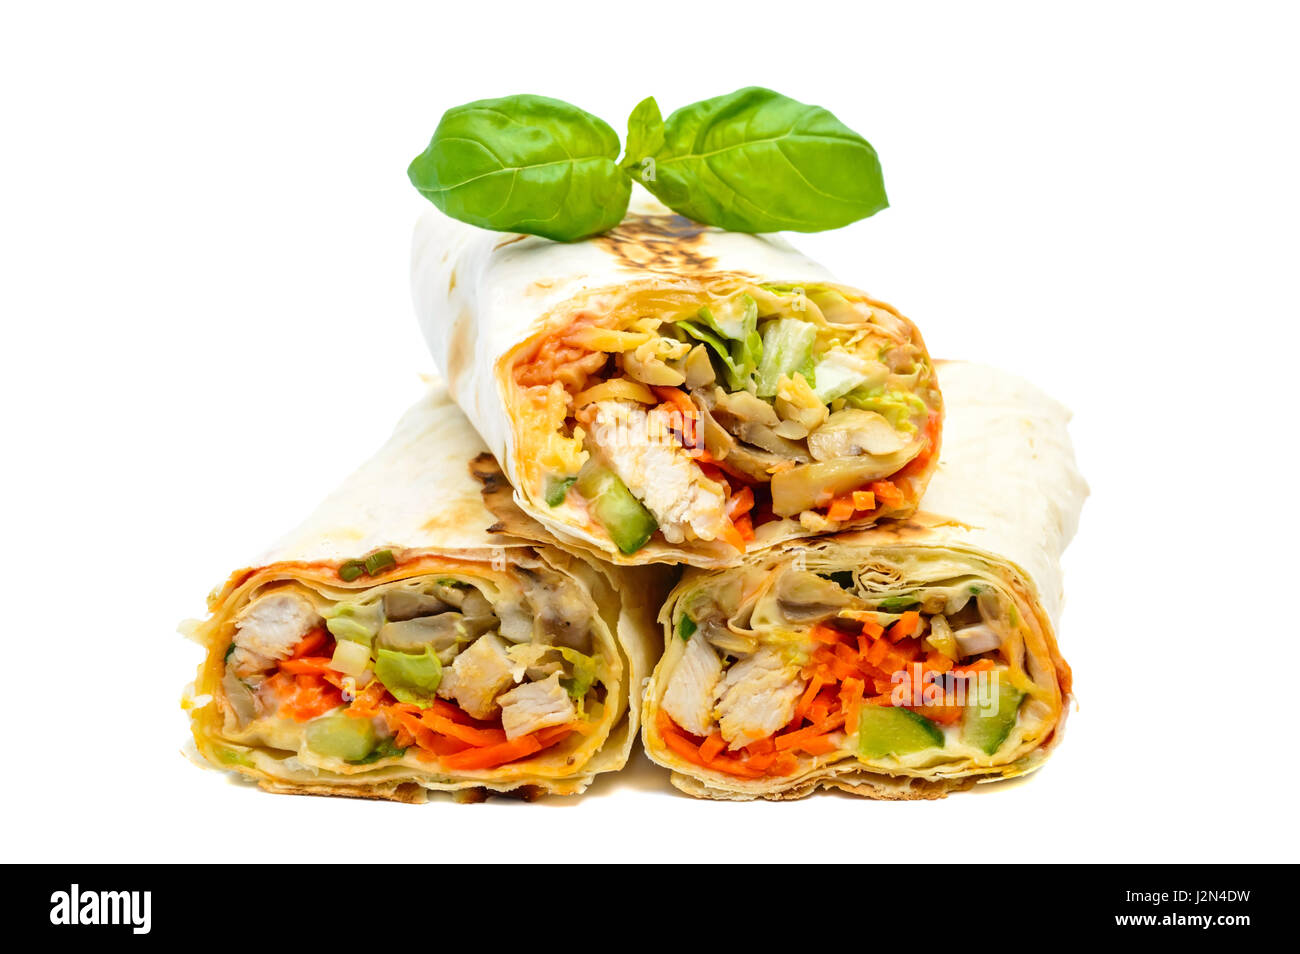 La nourriture traditionnelle du Moyen-Orient - shawarma. Poulet farci de Lavash, légumes, champignons et sauce. Isolé sur fond blanc. Banque D'Images